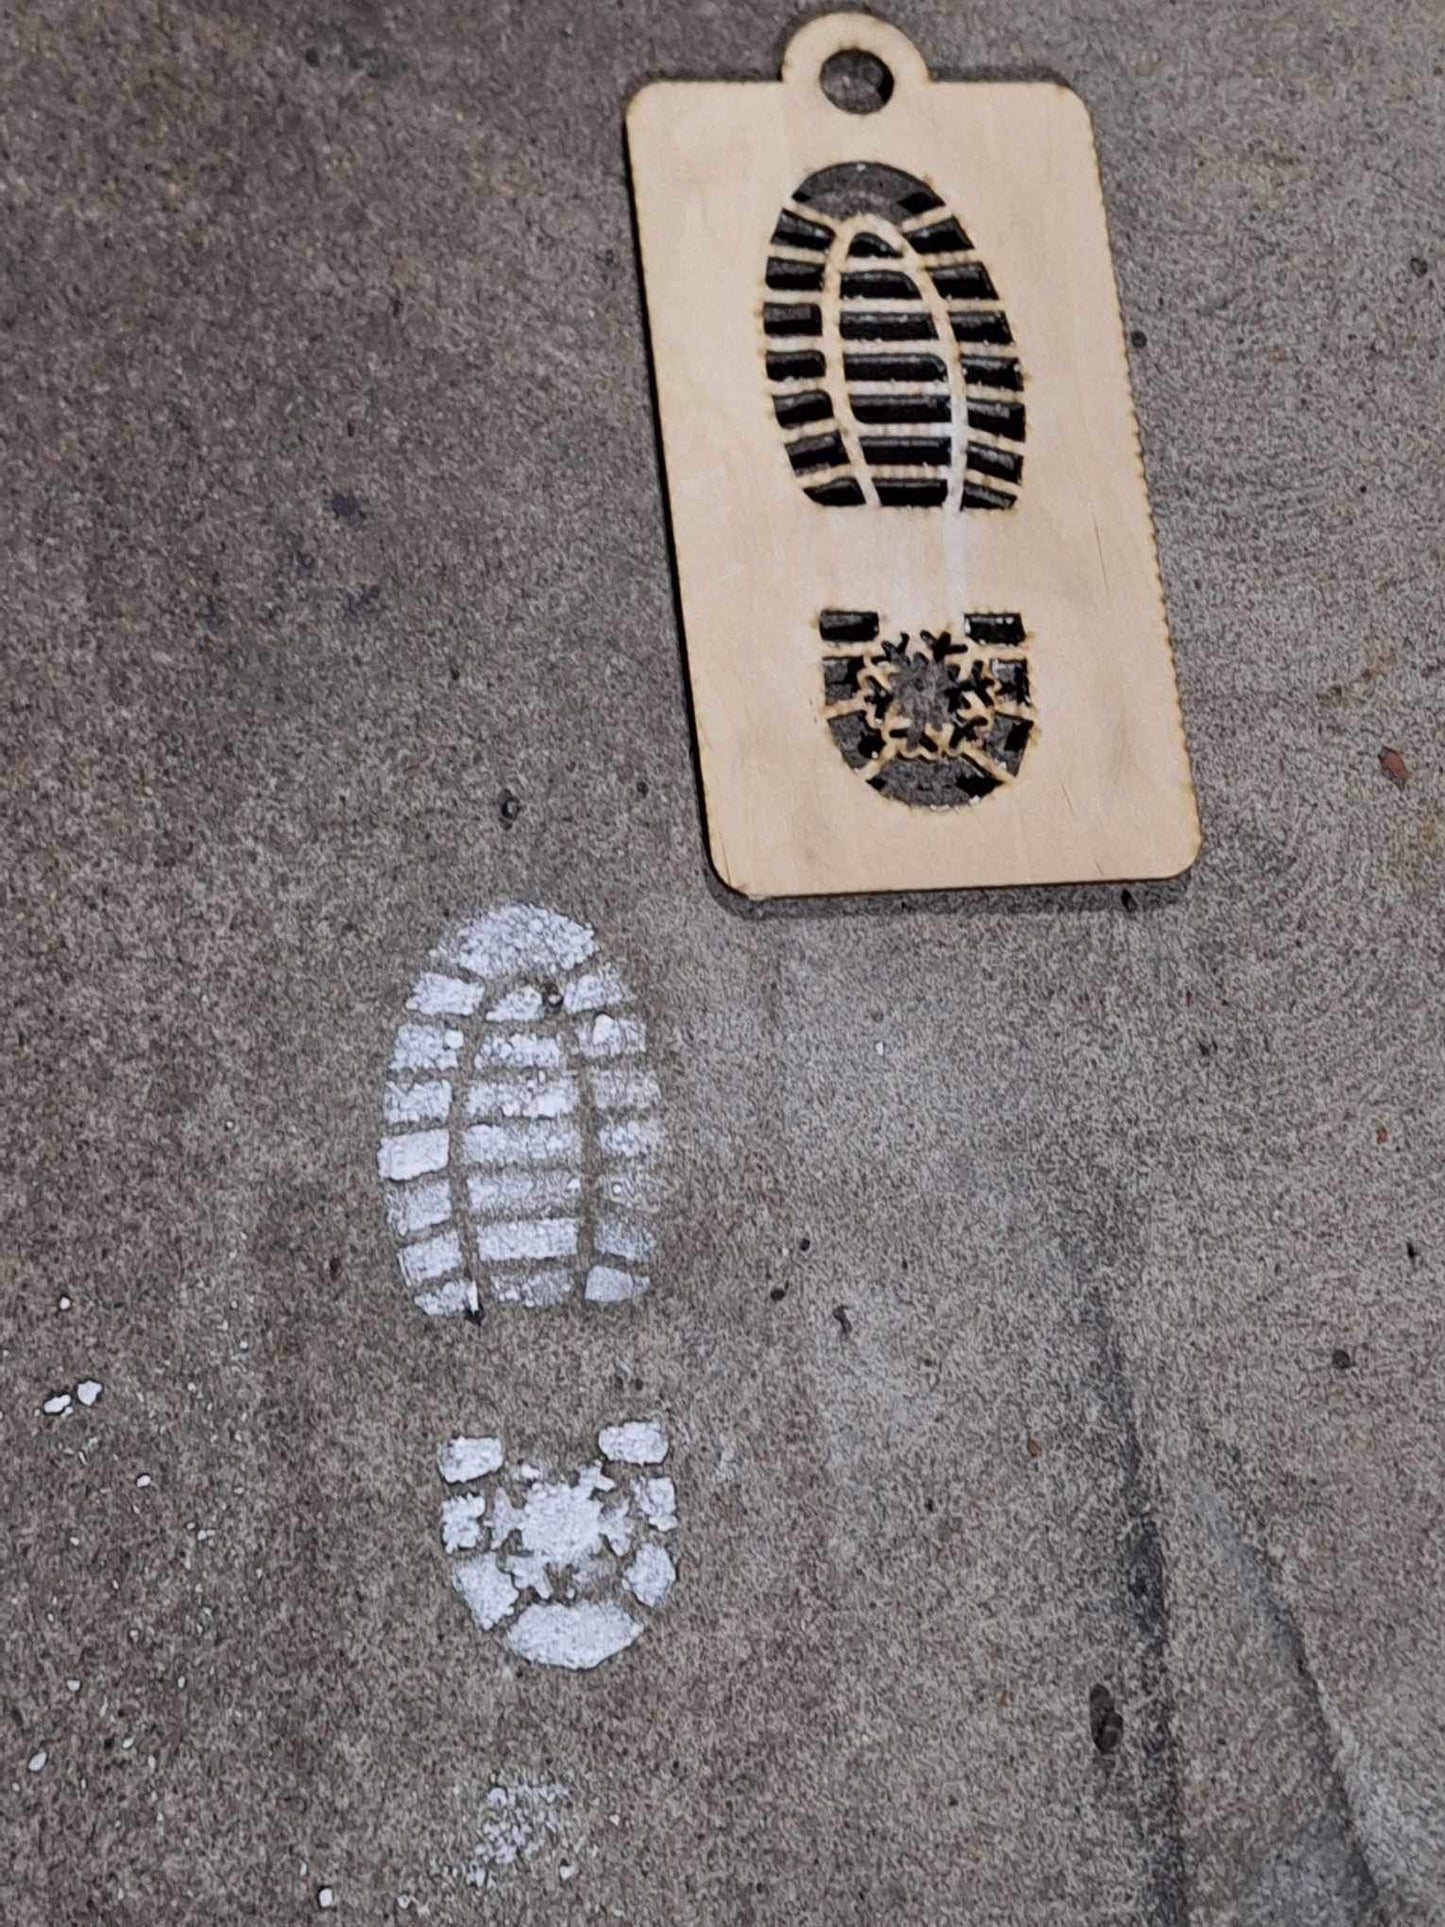 Santa Footprint Stencil